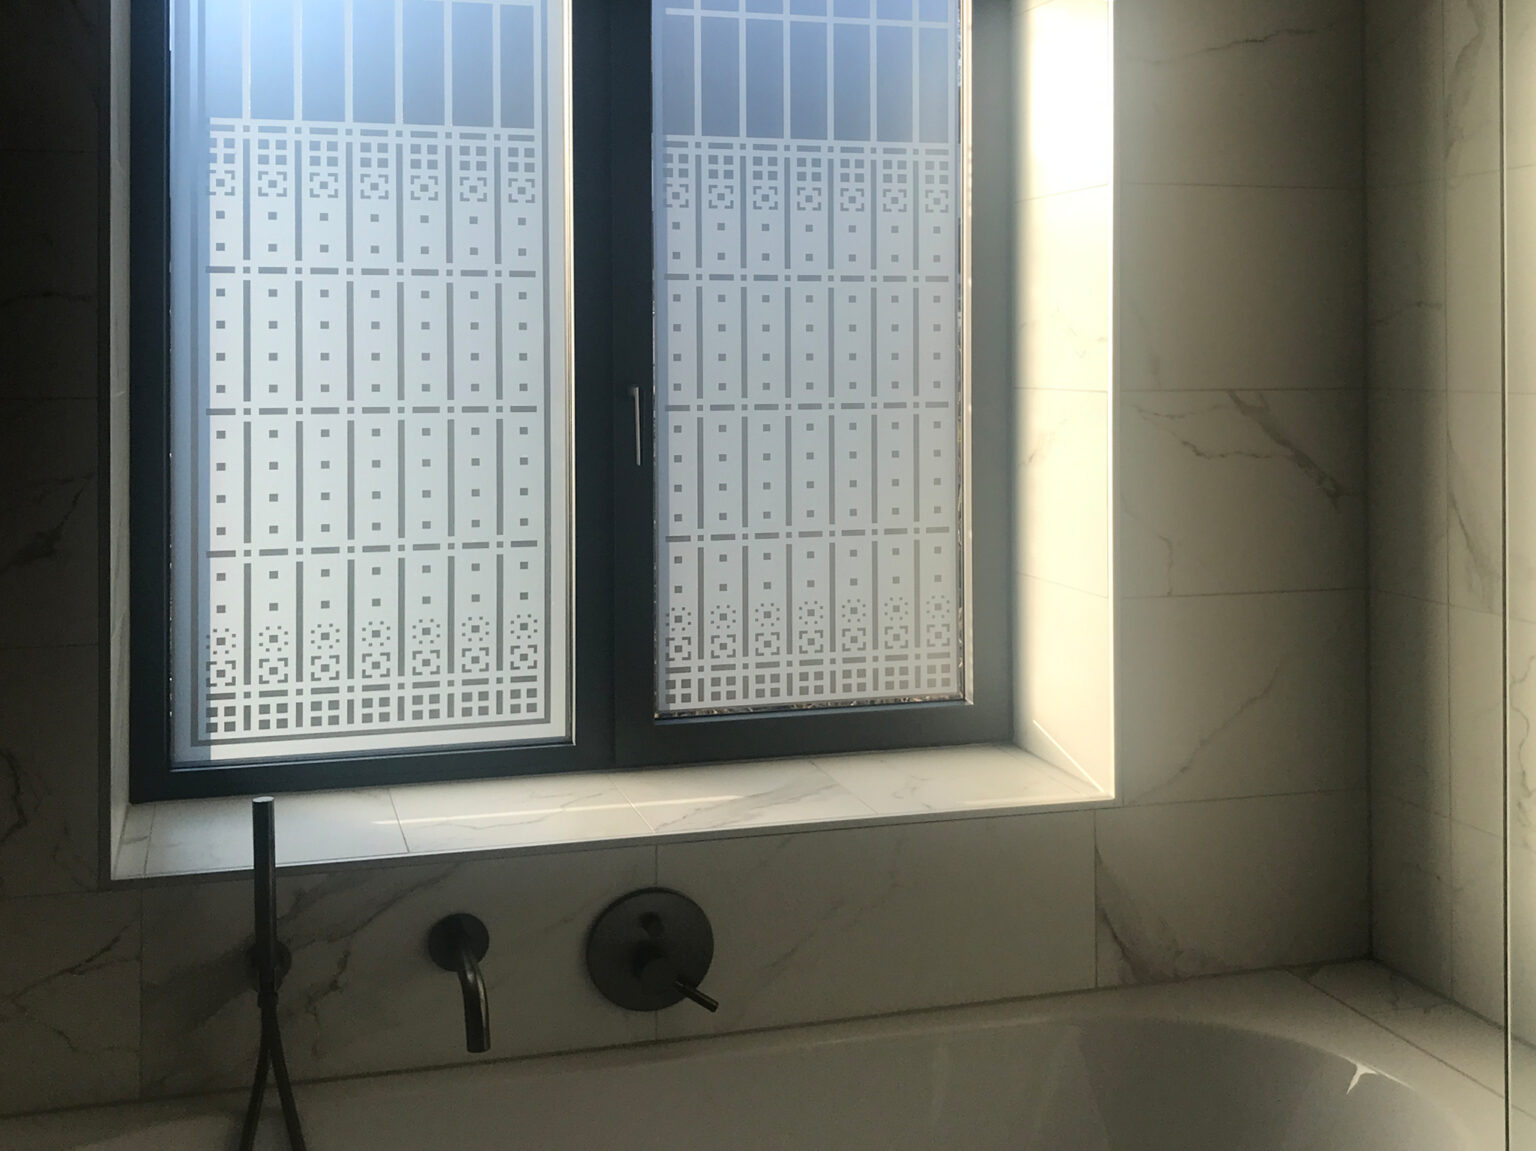 Impressie van de raamfolie van een Schutspatroon op badkamerramen.